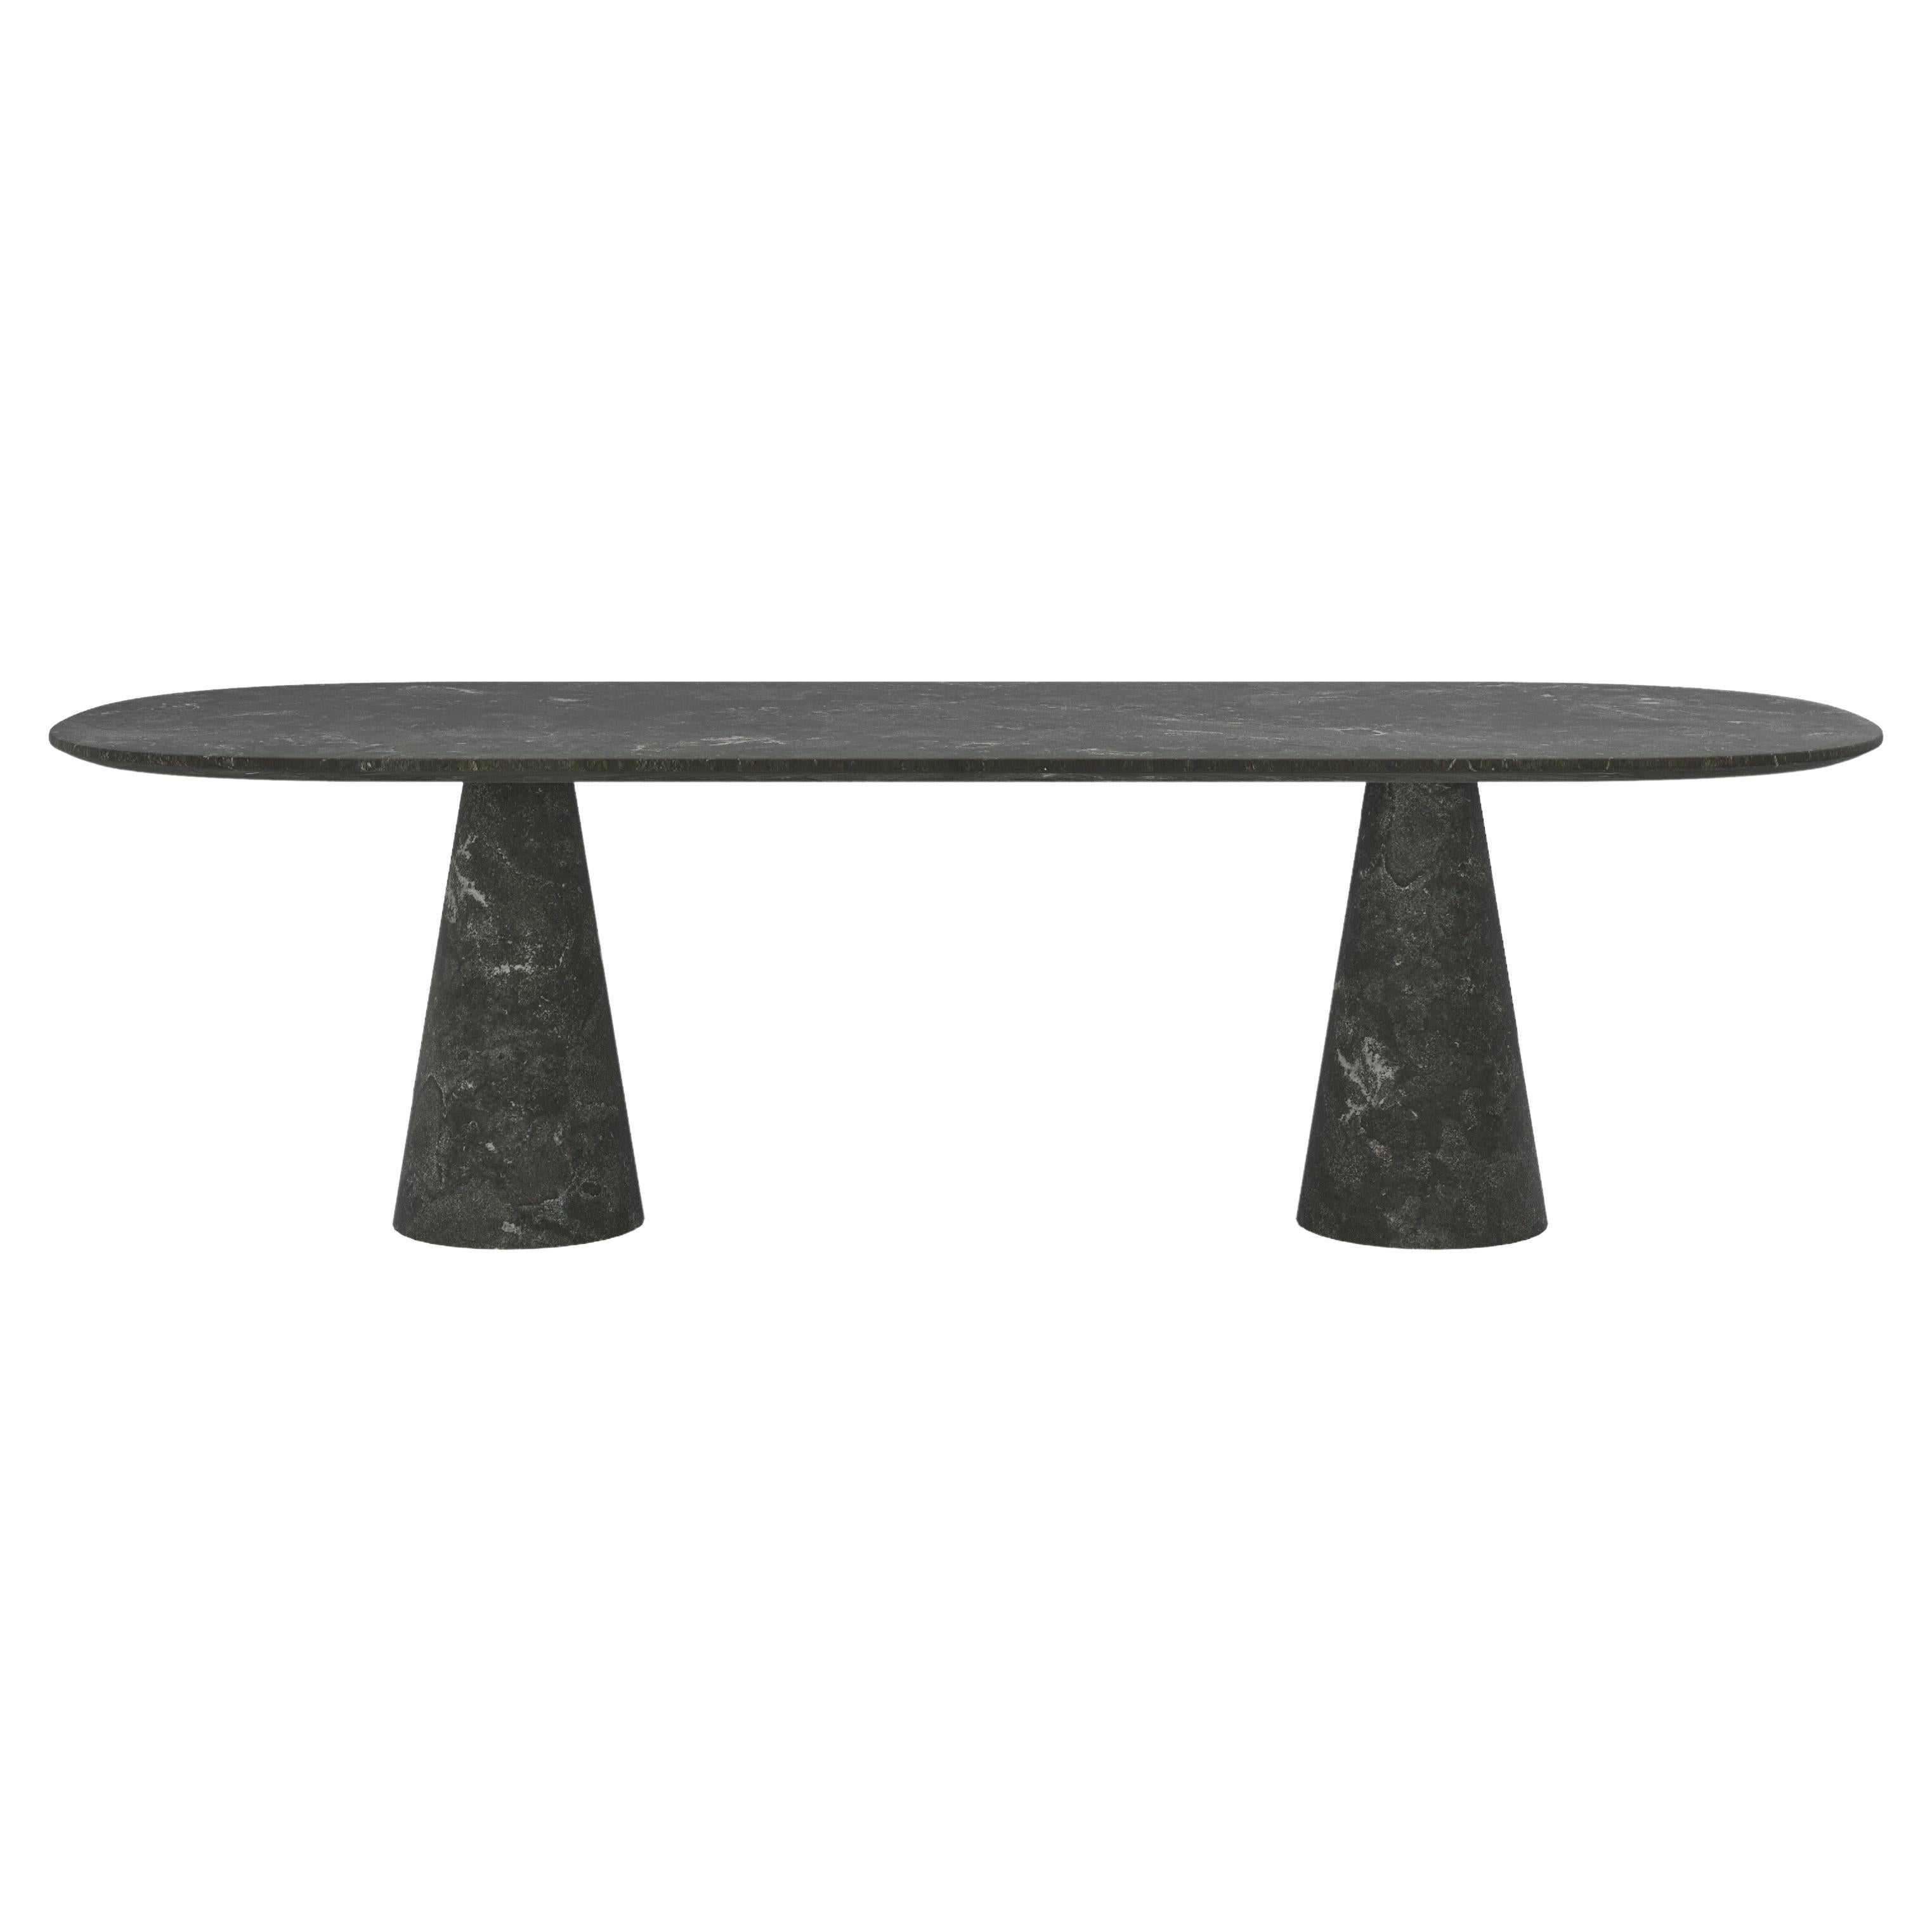 FORM(LA) Cono Oval Dining Table 118”L x 48”W x 30”H Nero Petite Granite For Sale